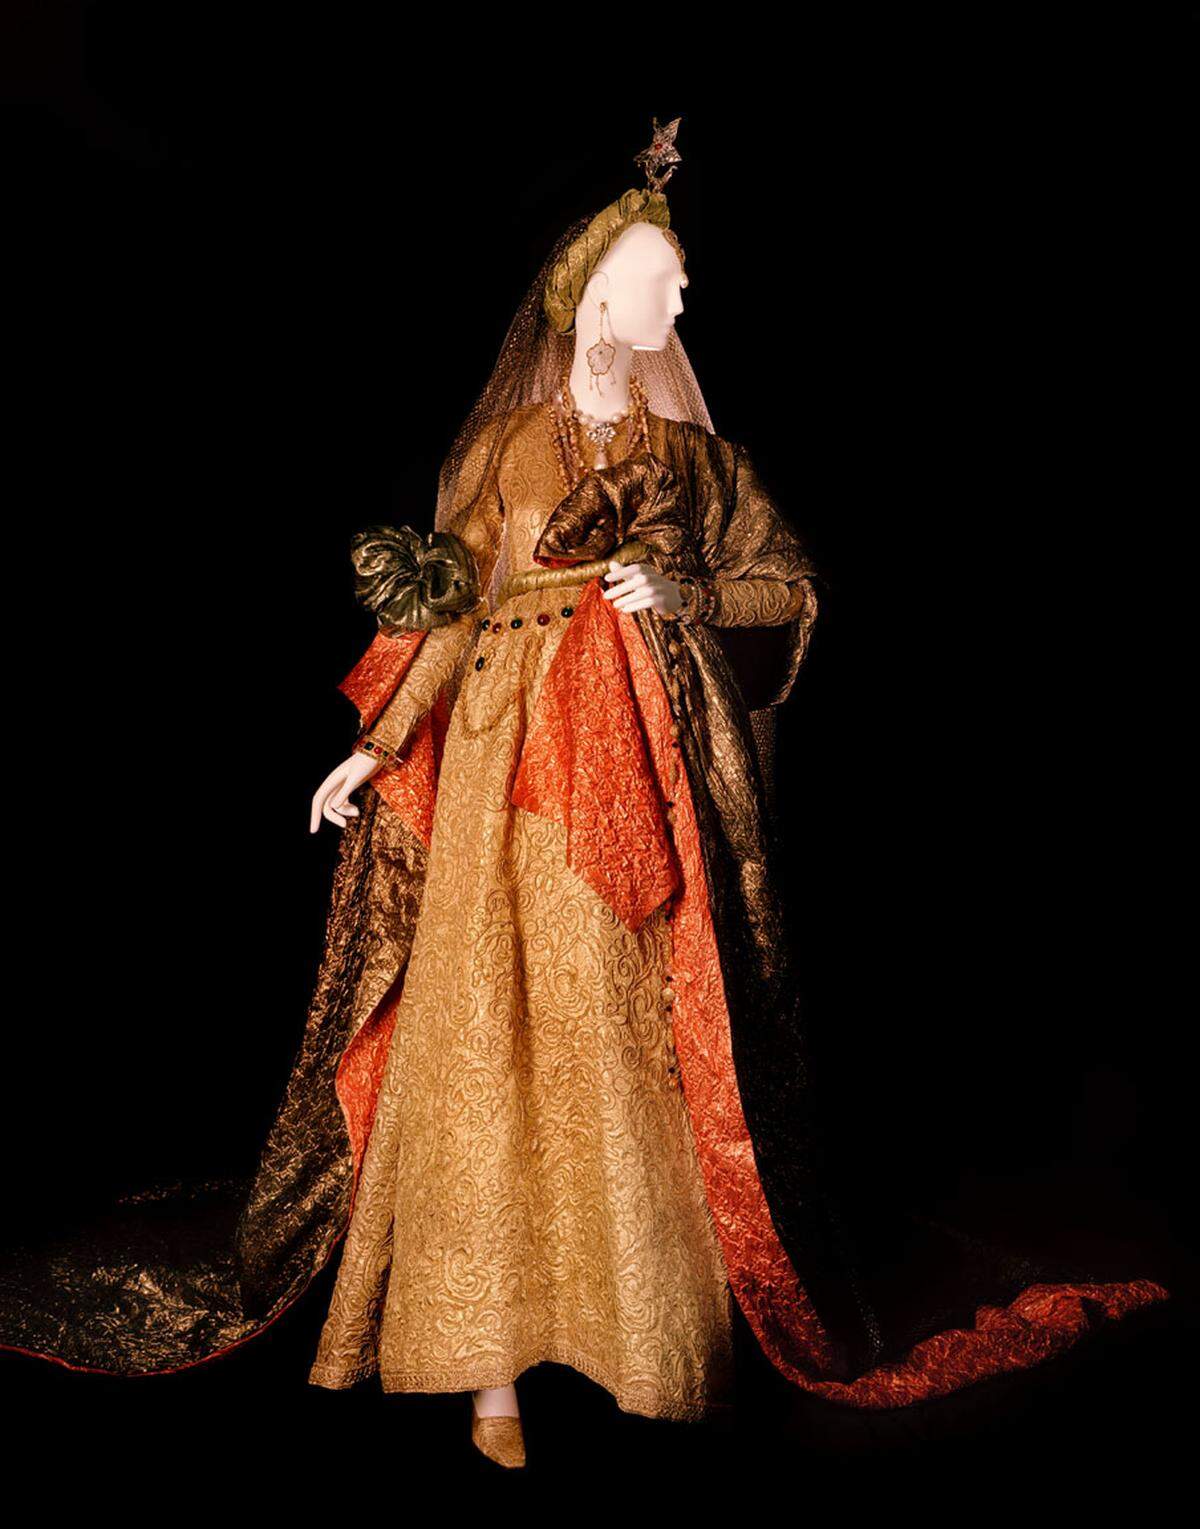 Saint Laurent selbst ließ sich unter anderem von Kunst und der weiblichen Emanzipation inspirieren. Diese Einflüsse sollen in der Ausstellung näher beleuchtet werden. Eine Hommage an William Shakespeare soll dieses Kleid darstellen.